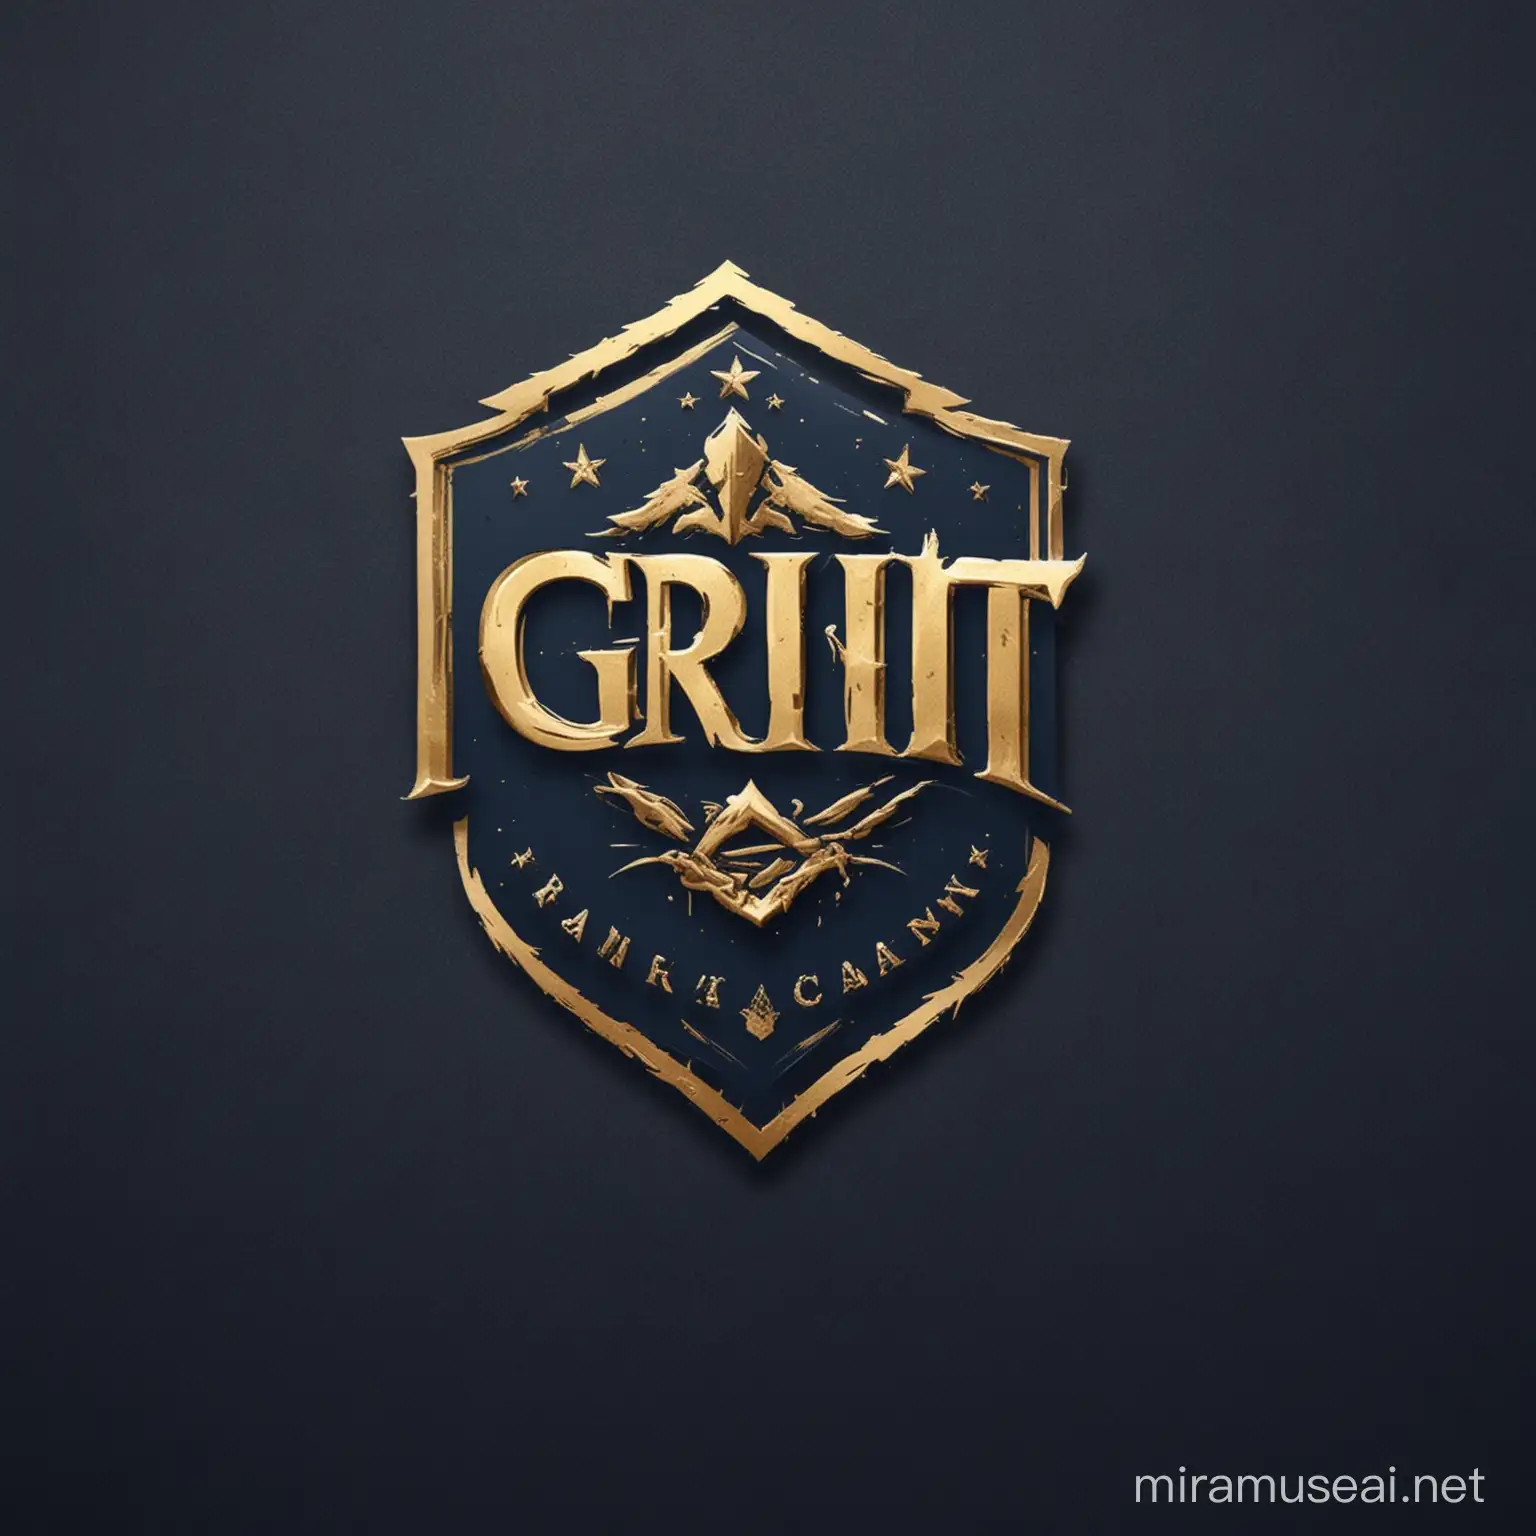 Buatkan saya logo brand bidang training dengan nama Grit Academy, logo harus berkesan elegan dan berwibawa dengan perpaduan warna emas dan navy